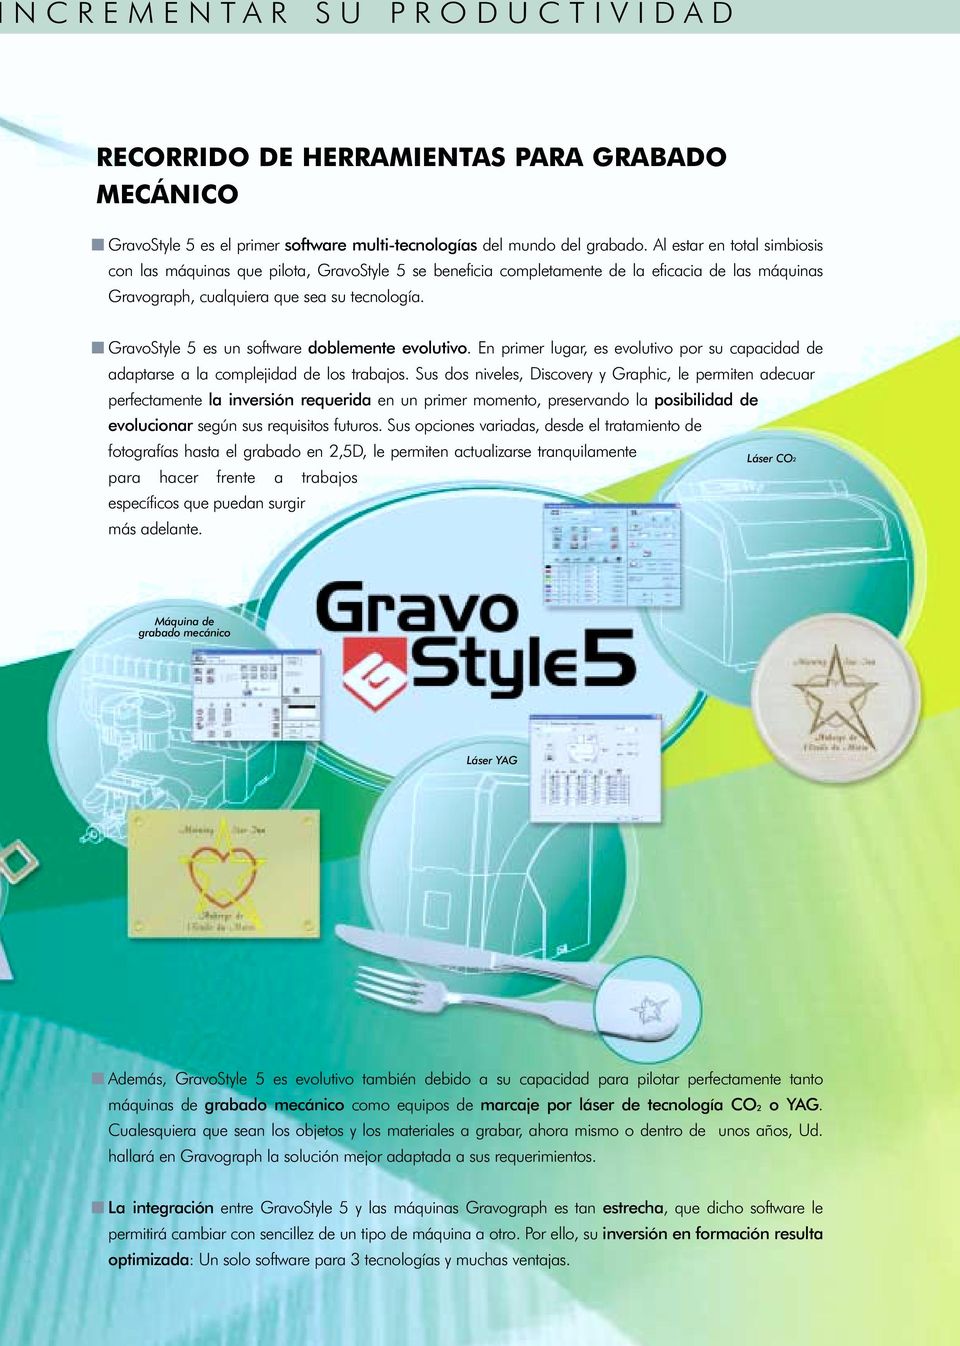 GravoStyle 5 es un software doblemente evolutivo. En primer lugar, es evolutivo por su capacidad de adaptarse a la complejidad de los trabajos.